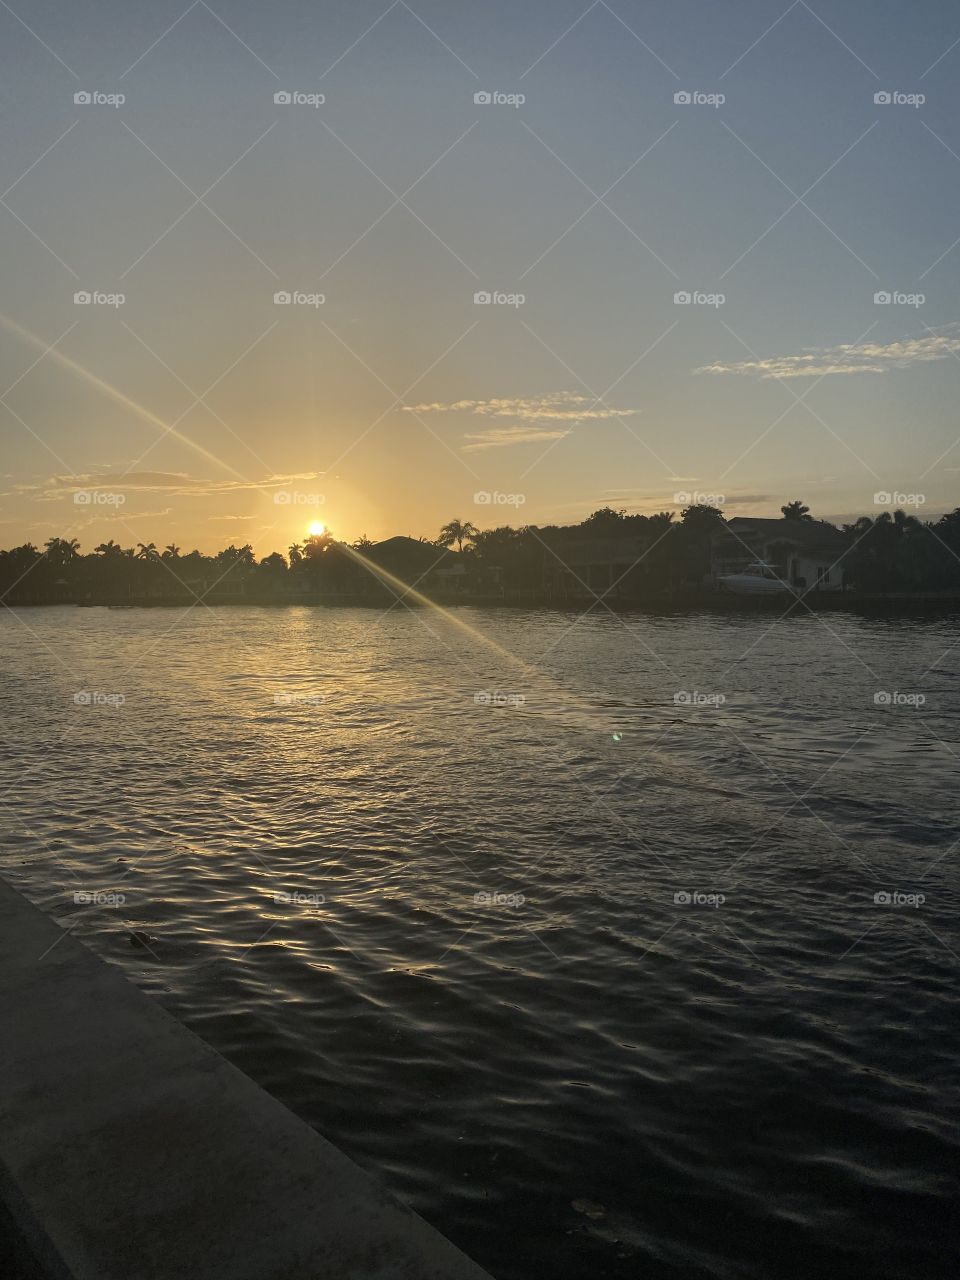 Sunset, Water, Dawn, Sun, Boat